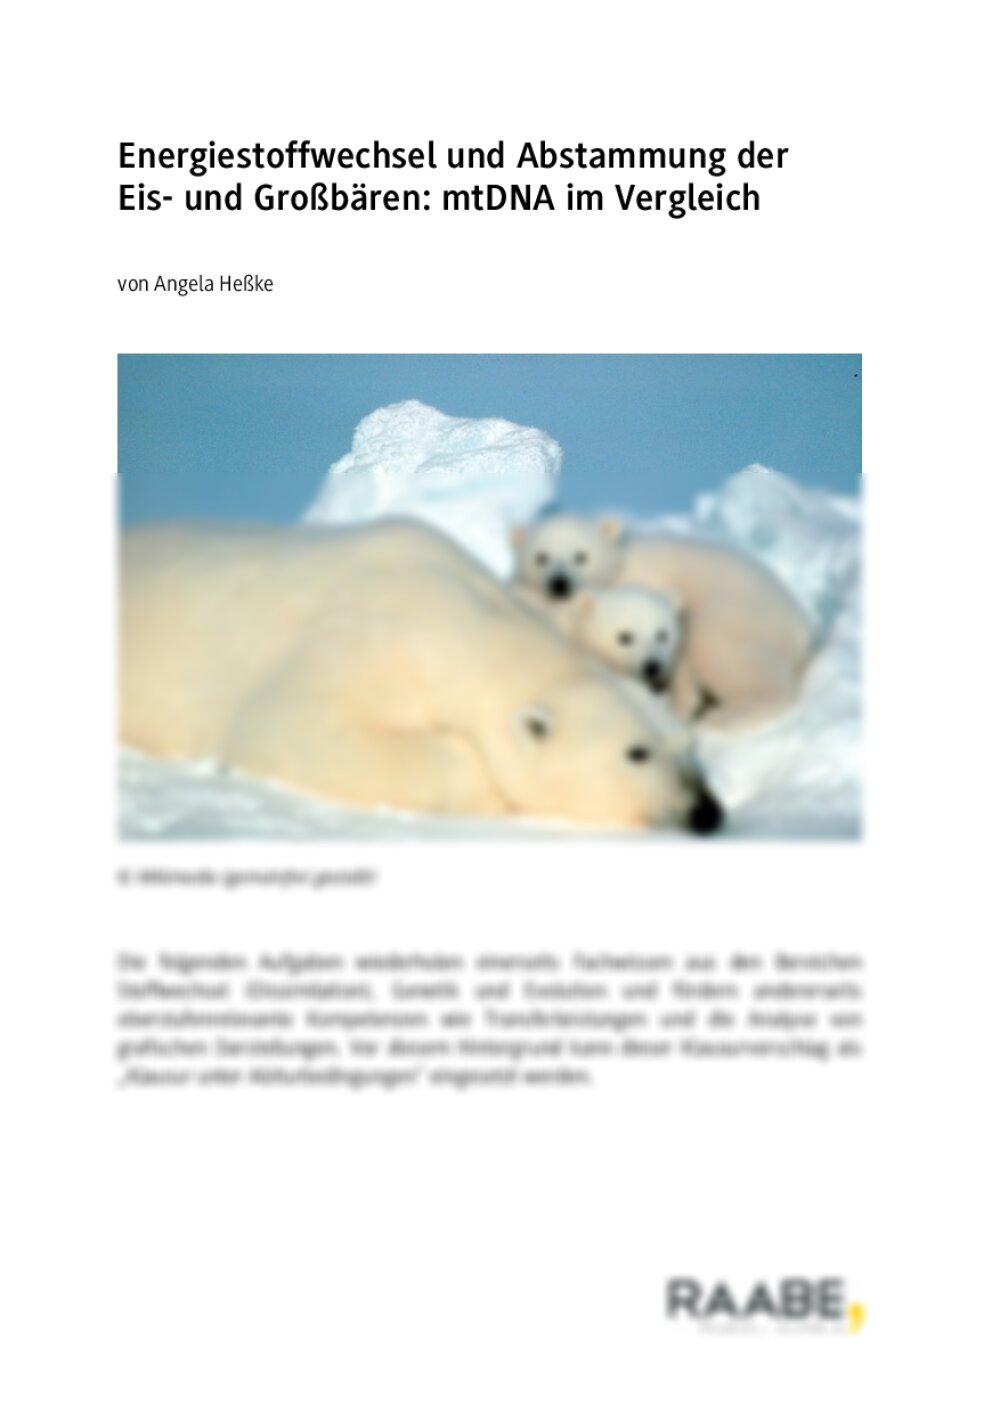 Energiestoffwechsel und Abstammung der Eis- und Großbären - Seite 1